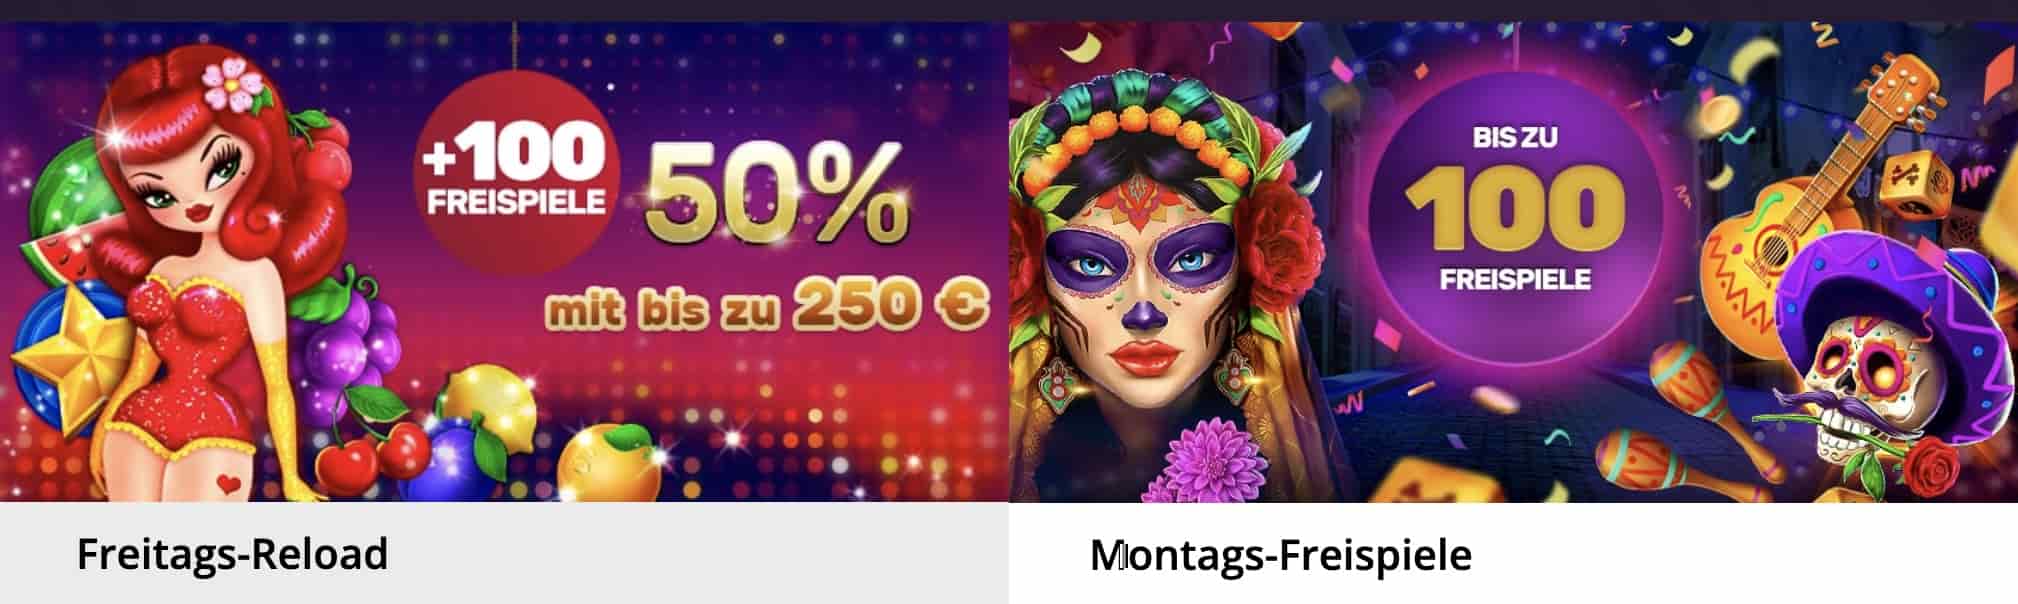 PlayAmo Casino Bonus